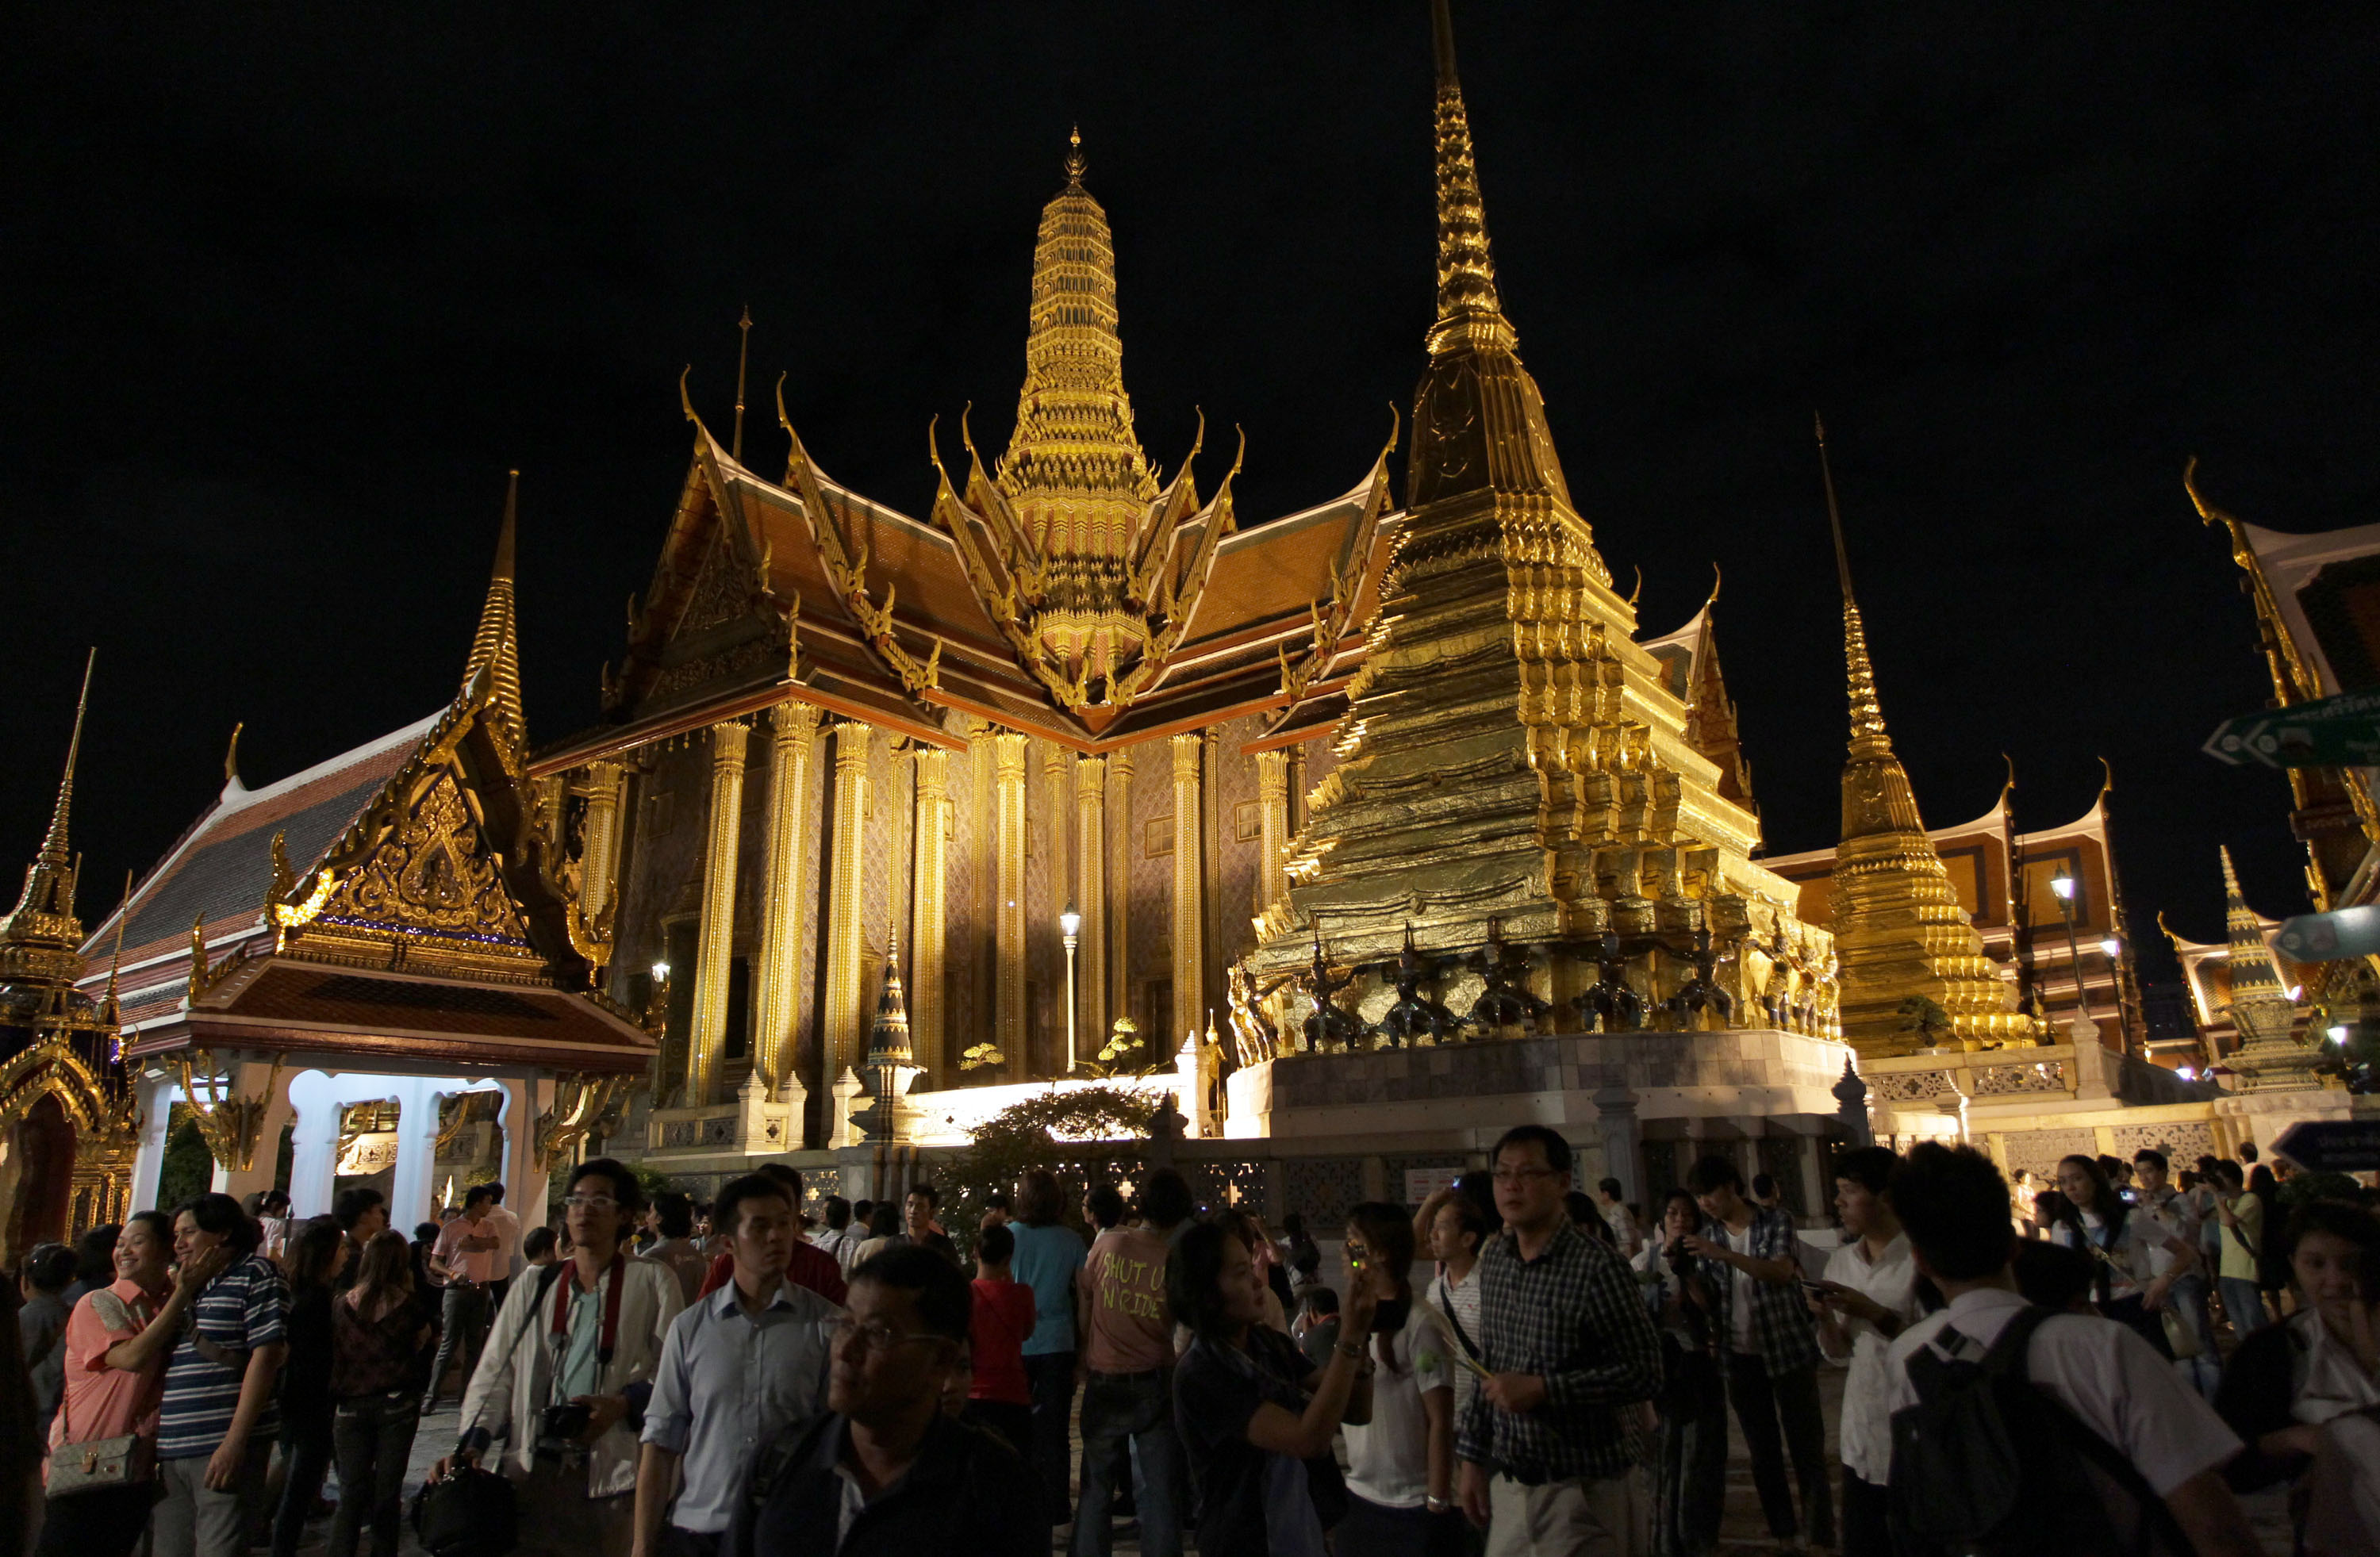 Buddhatemplet i Bangkok är ett av de mest populära turistmålen. USA utfärdade en varning för terrorattacker på fredagen.